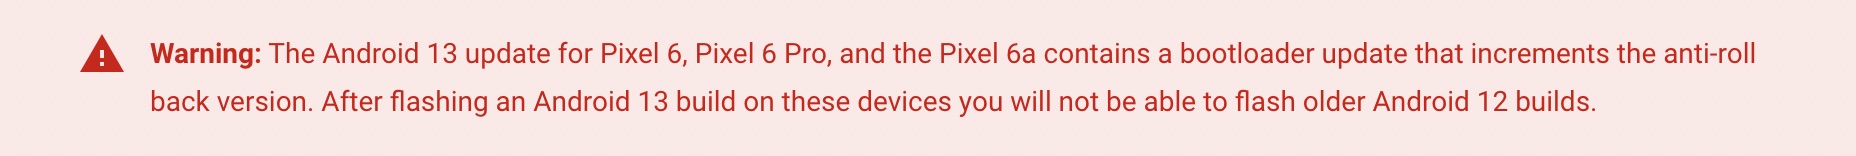 понизить Pixel 6 Pro с Android 13 до Android 12